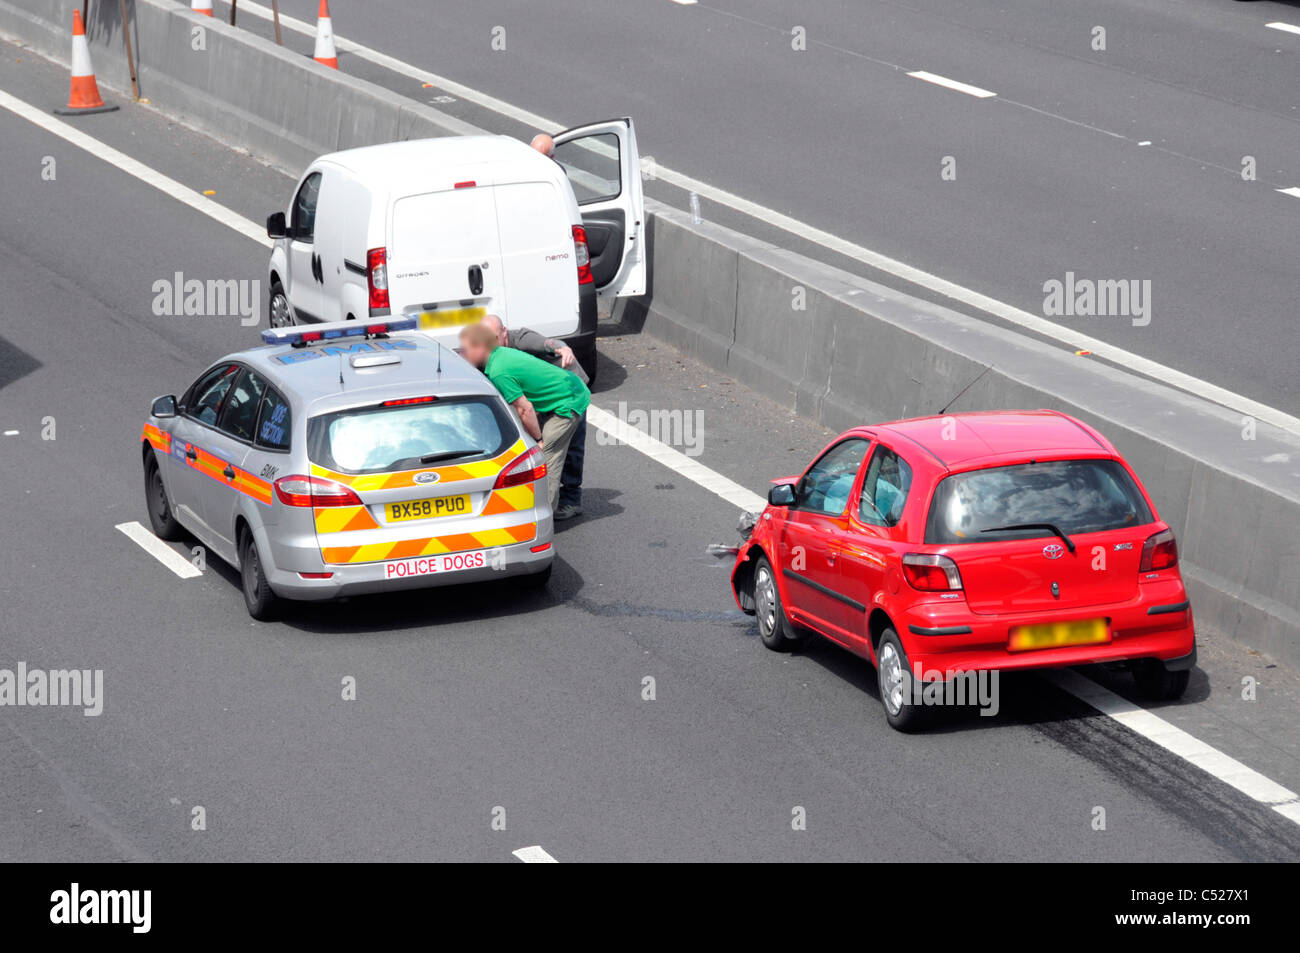 Luftaufnahme UK Autobahnfahrzeuge stationiert in Spur 4 Unfall mit rotem Auto unter Brücke Zeugen sprechen mit der Polizei neben Beton Crashbarriere Stockfoto